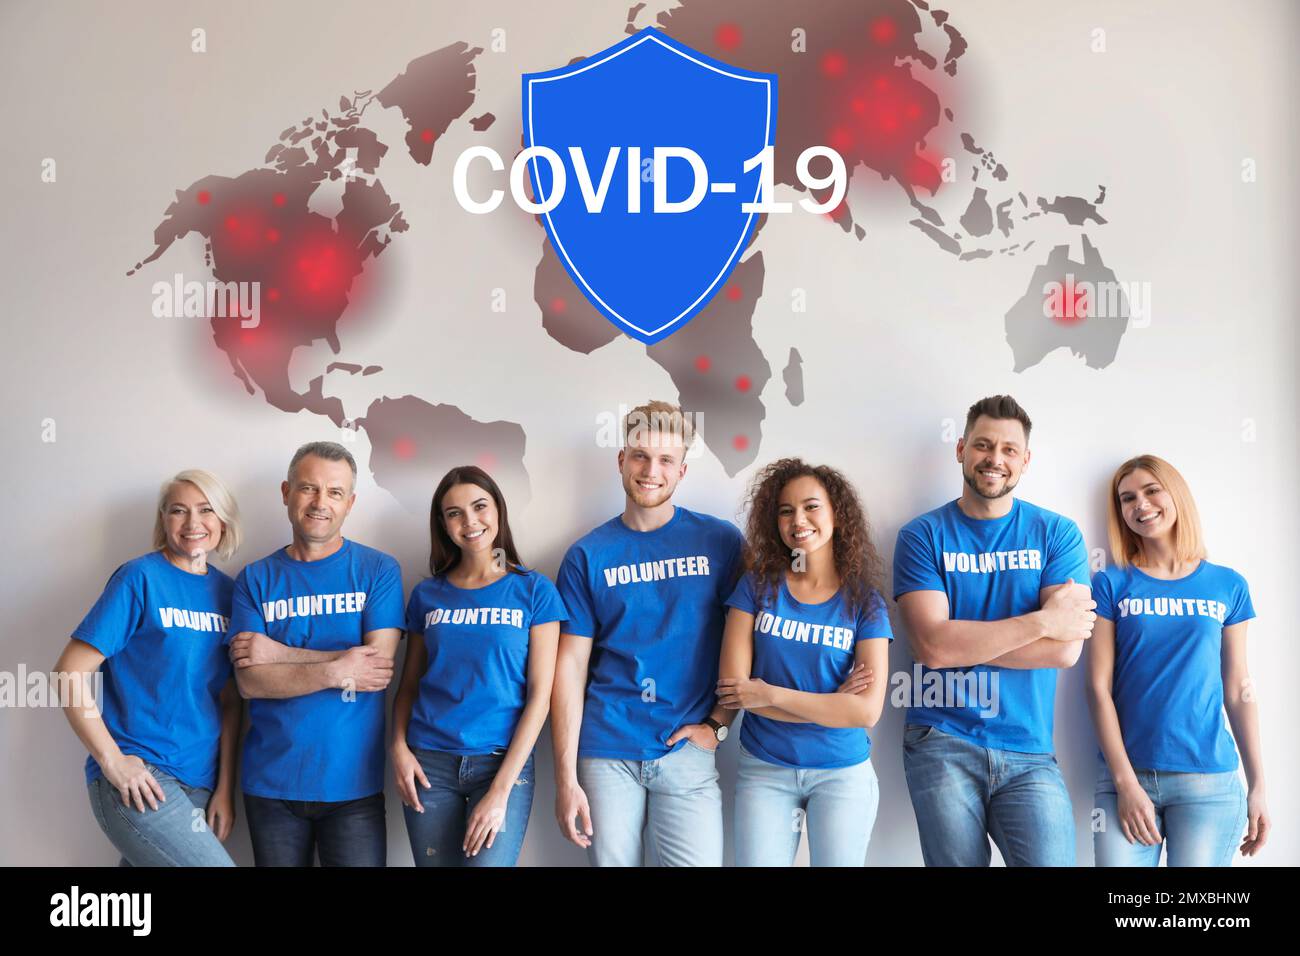 Les bénévoles s'unissent pour aider pendant l'épidémie de COVID-19. Groupe de personnes sur fond clair, carte du monde et illustrations de bouclier Banque D'Images